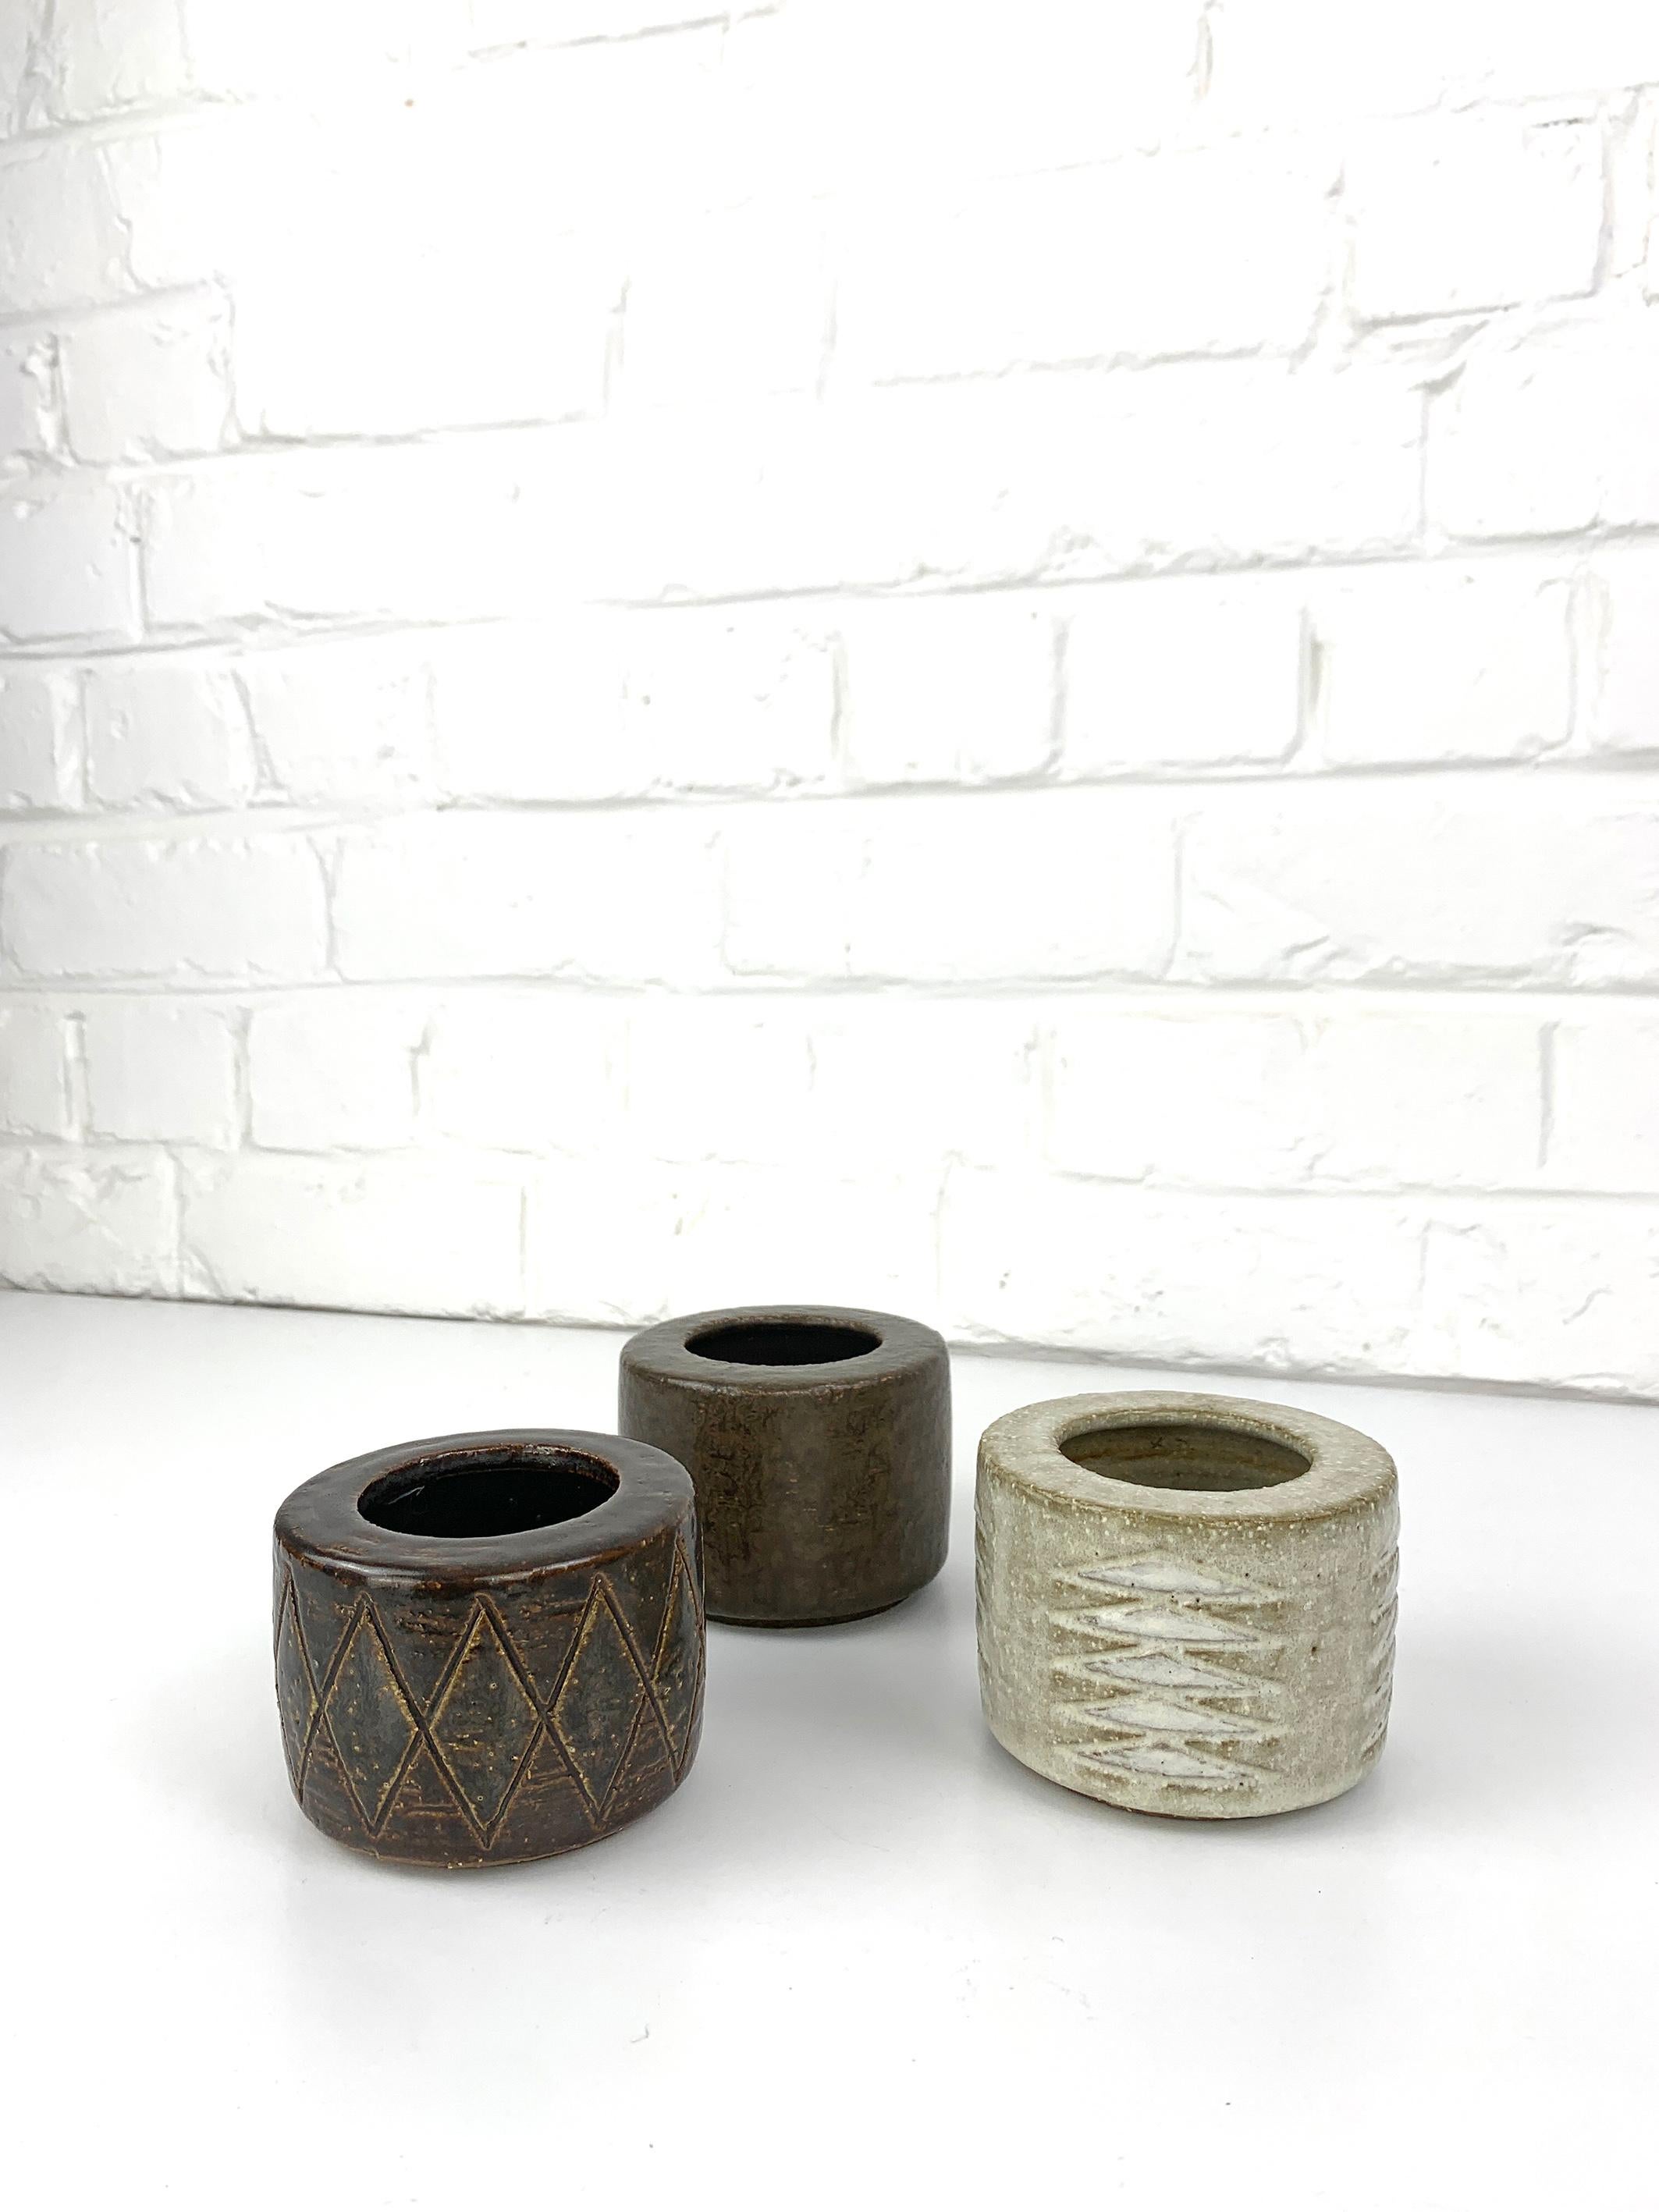 Lot de 3 vases en céramique dans les tons beige-brun. Ils sont accompagnés d'un glaçage discret. Céramique scandinave du milieu du siècle. 

Produit dans les années 1960 par Palshus (Danemark), fondé par Per et sa femme Annelise Linnemann-Schmidt.